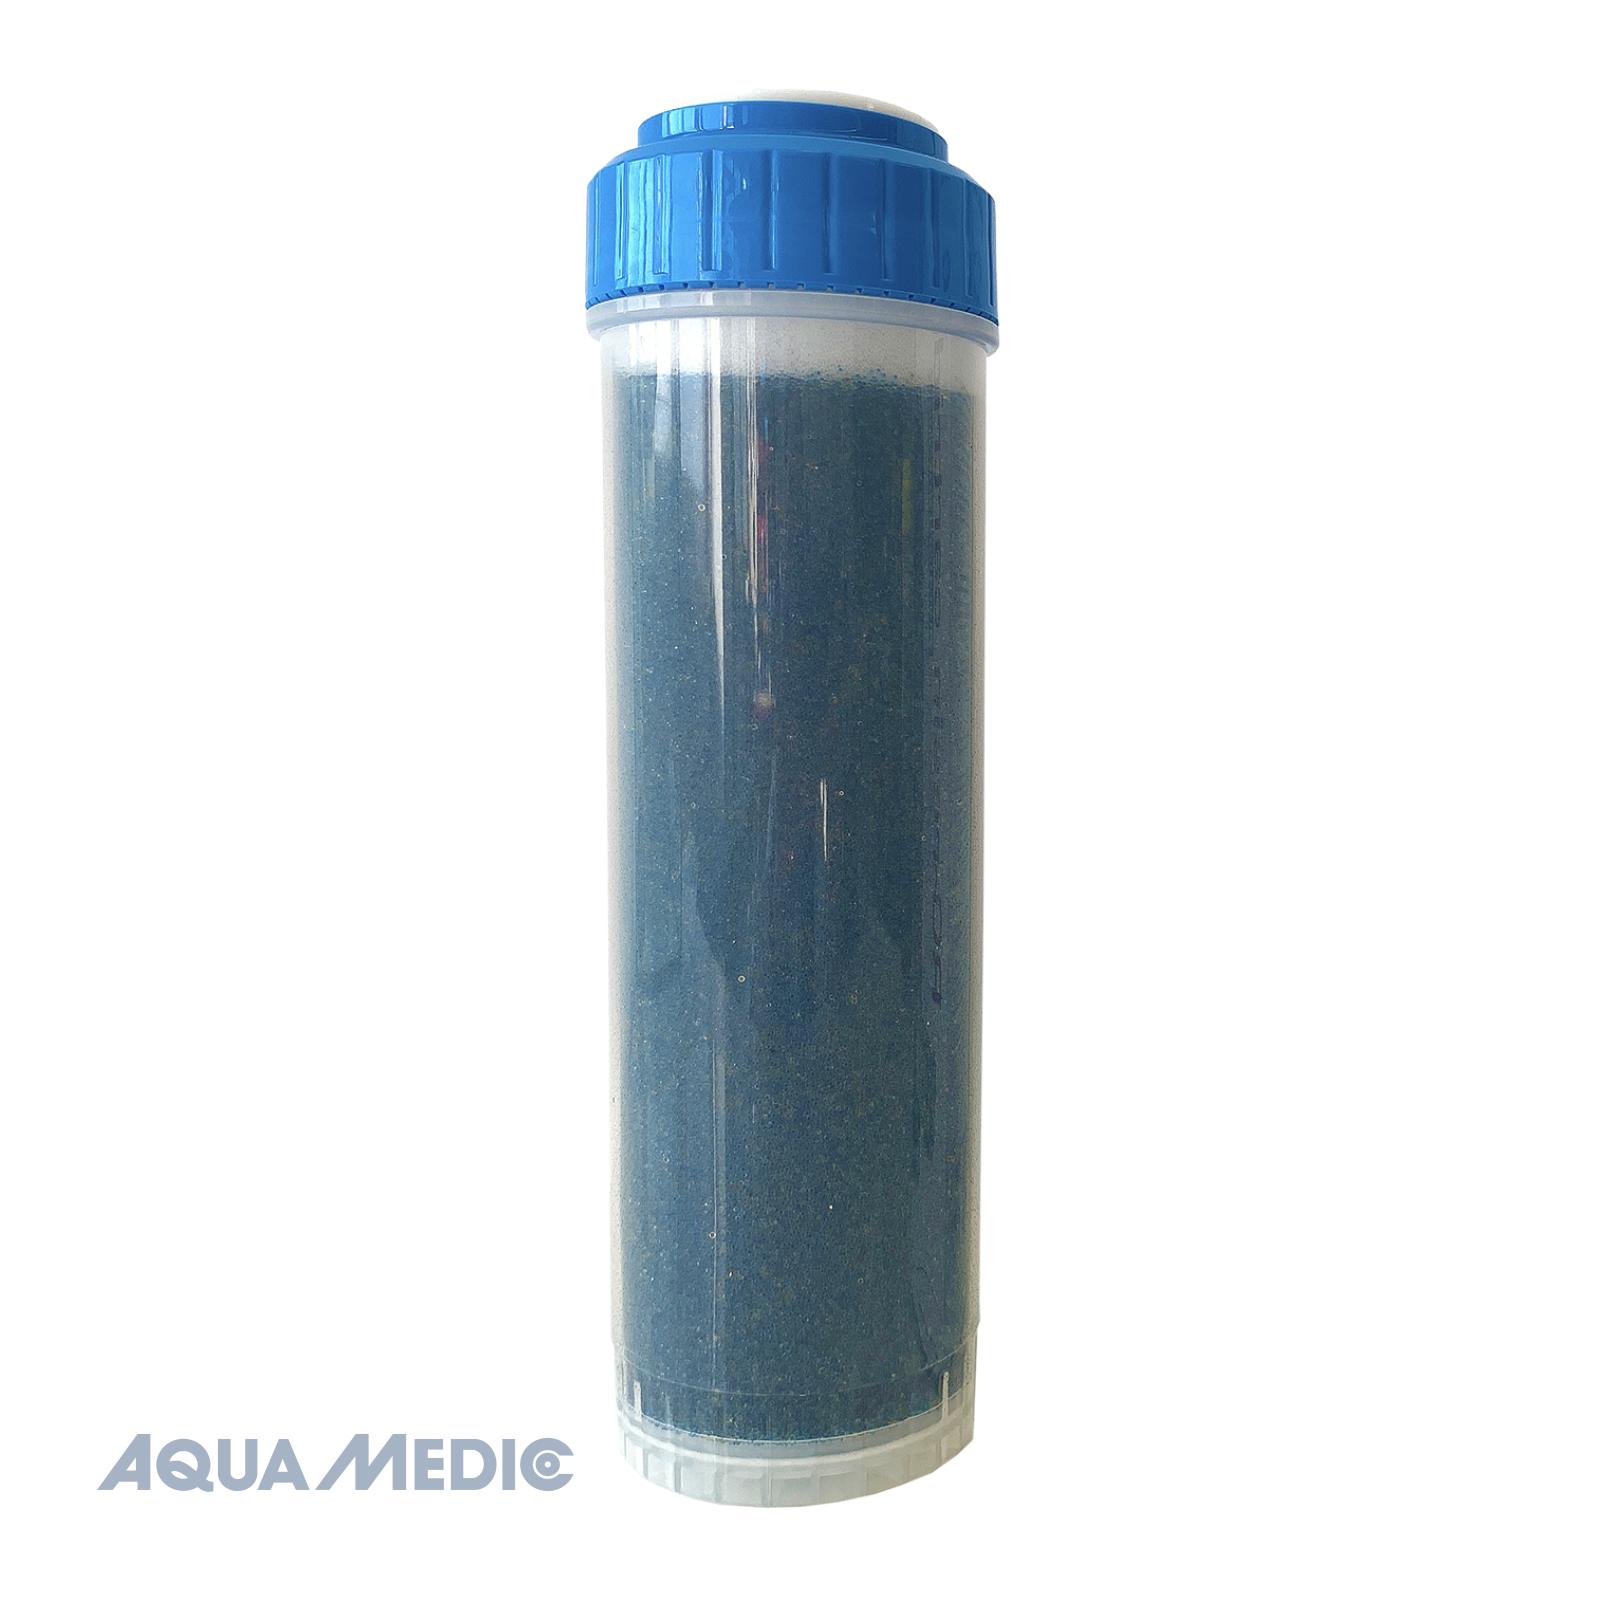 Aqua Medic RO harspatroon